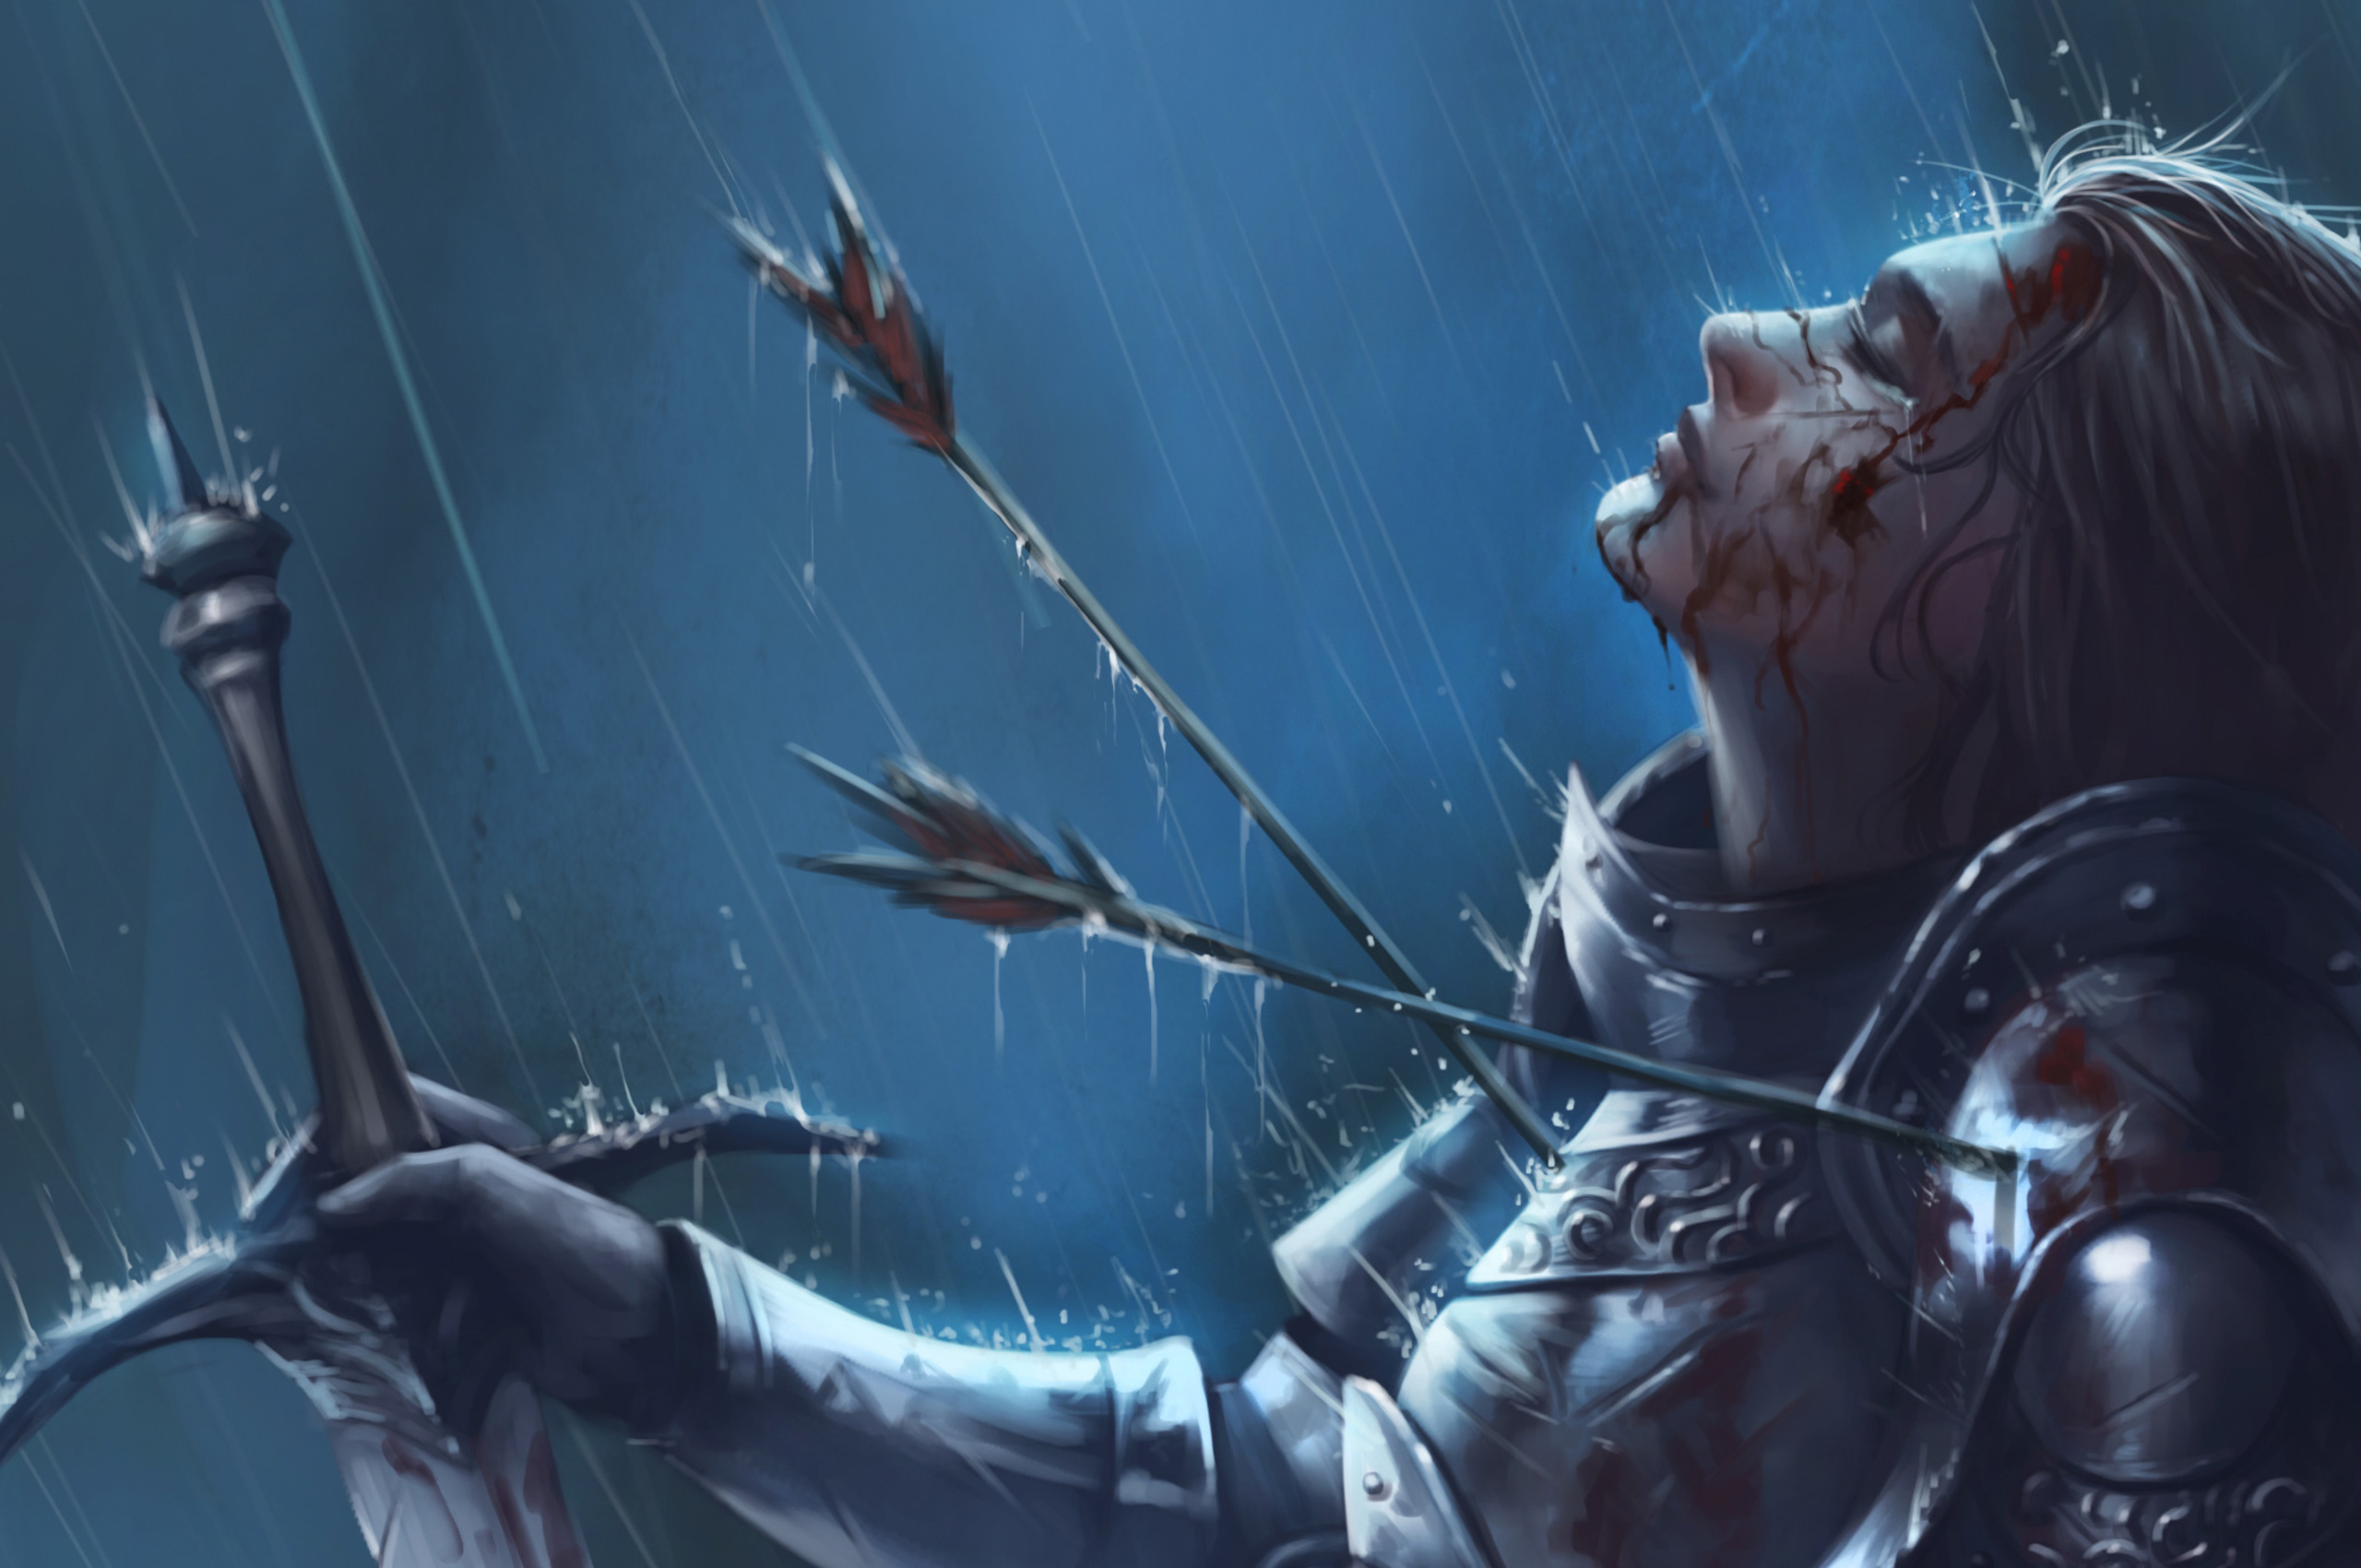 warrior-girl-killed-by-arrow-sword-rain-f7.jpg. 